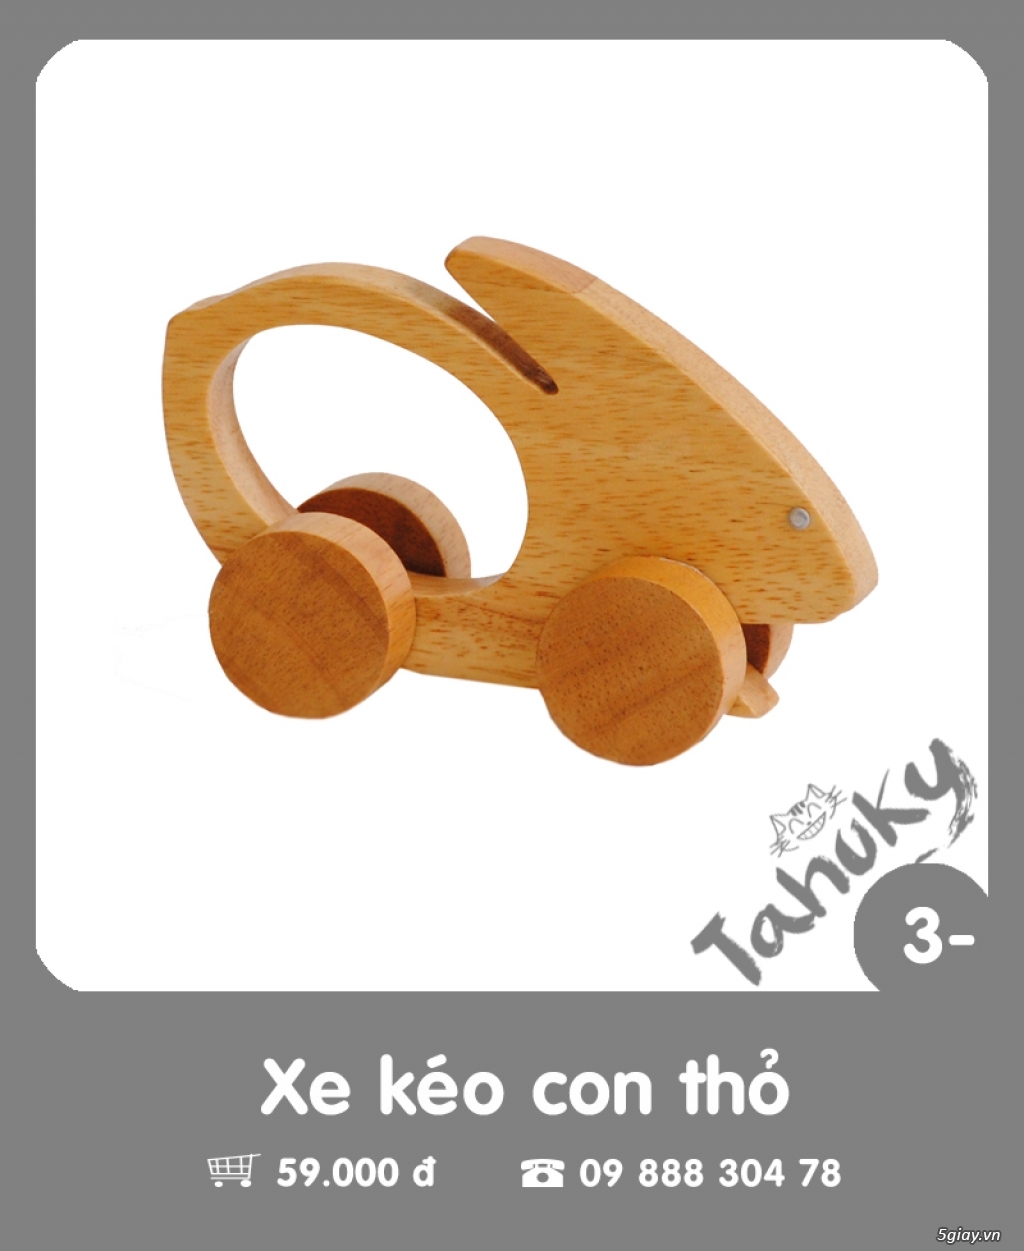 Đồ chơi gỗ an toàn Tahuky (dành cho bé dưới 3 tuổi) - 2